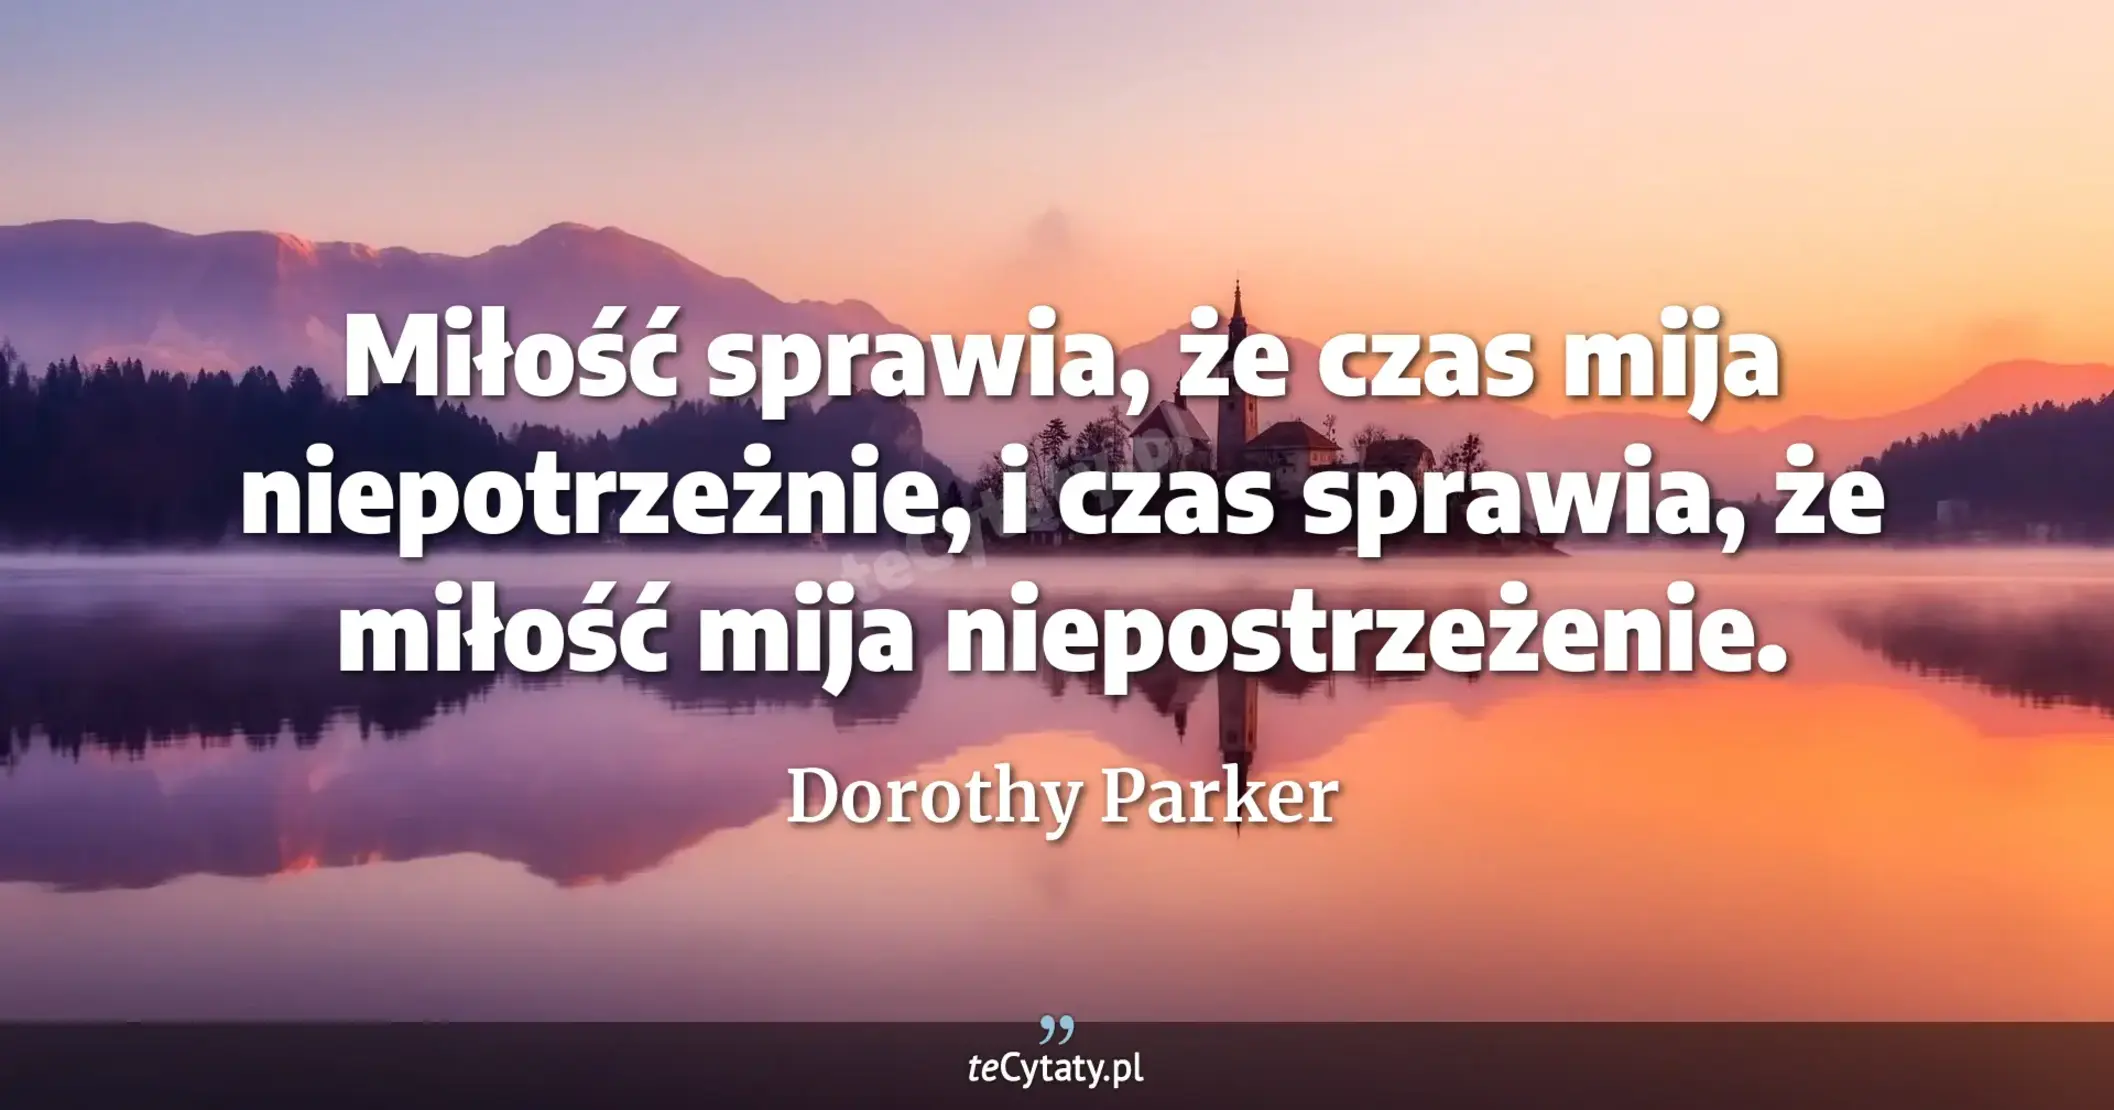 Miłość sprawia, że czas mija niepotrzeżnie, i czas sprawia, że miłość mija niepostrzeżenie. - Dorothy Parker